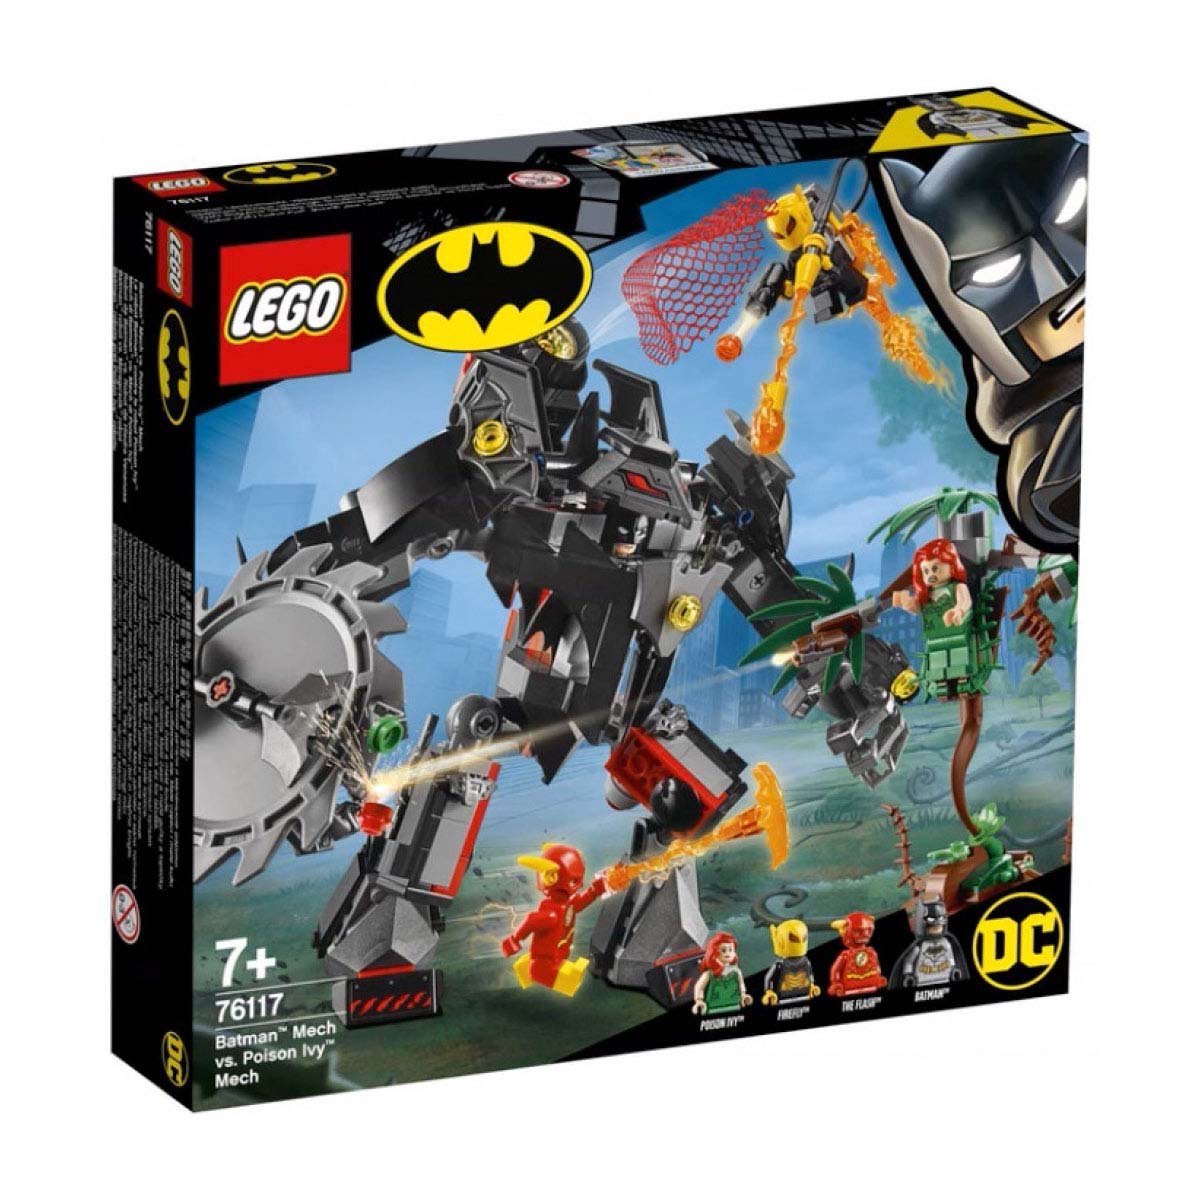 Robot de Batman Vs Robot de Hiedra Venenosa Lego